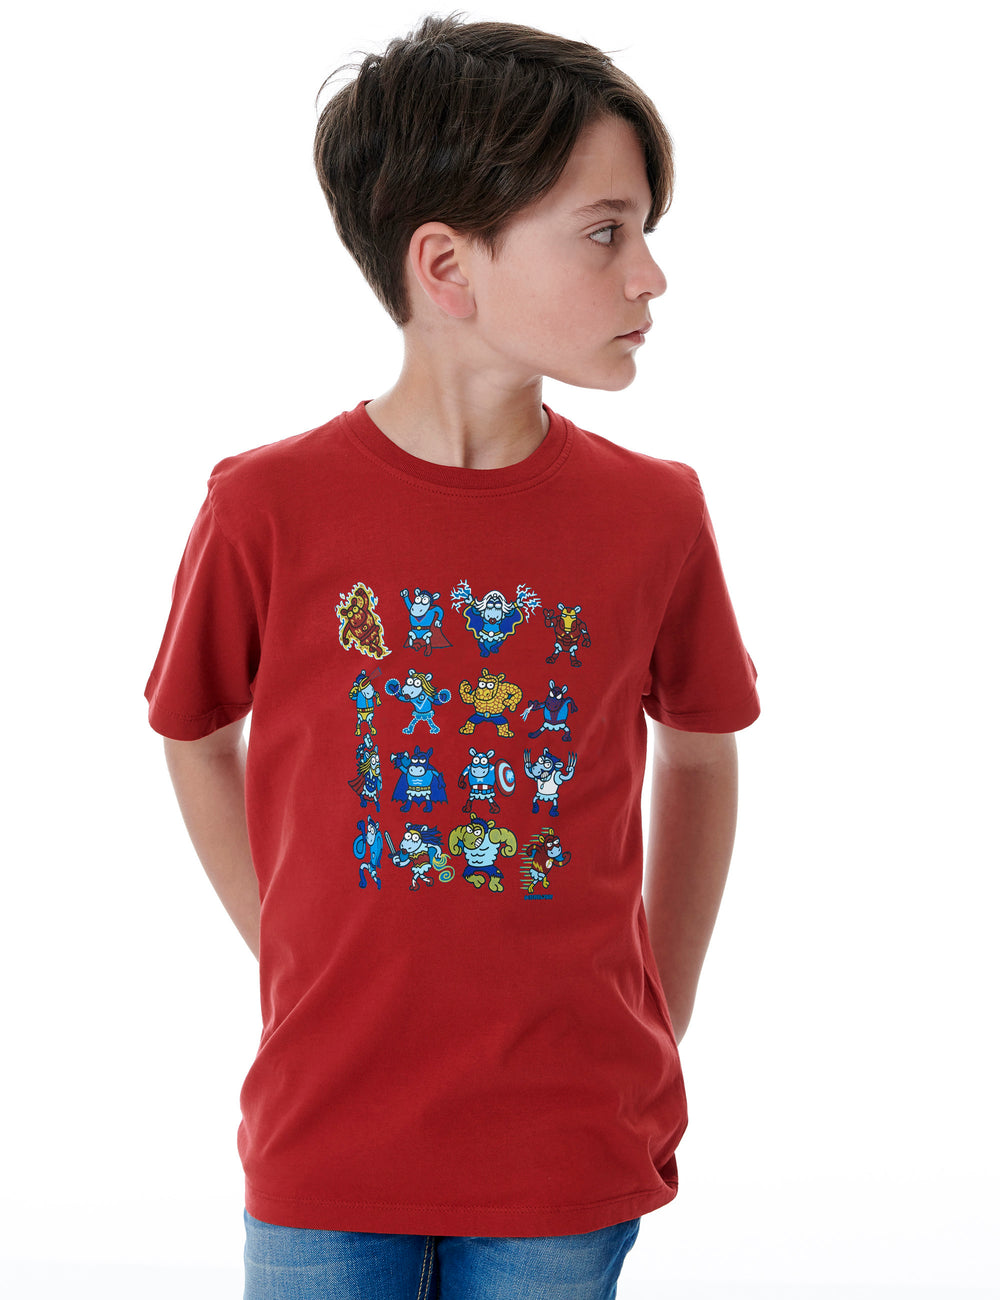 Super Sheeps Kids T-Shirt